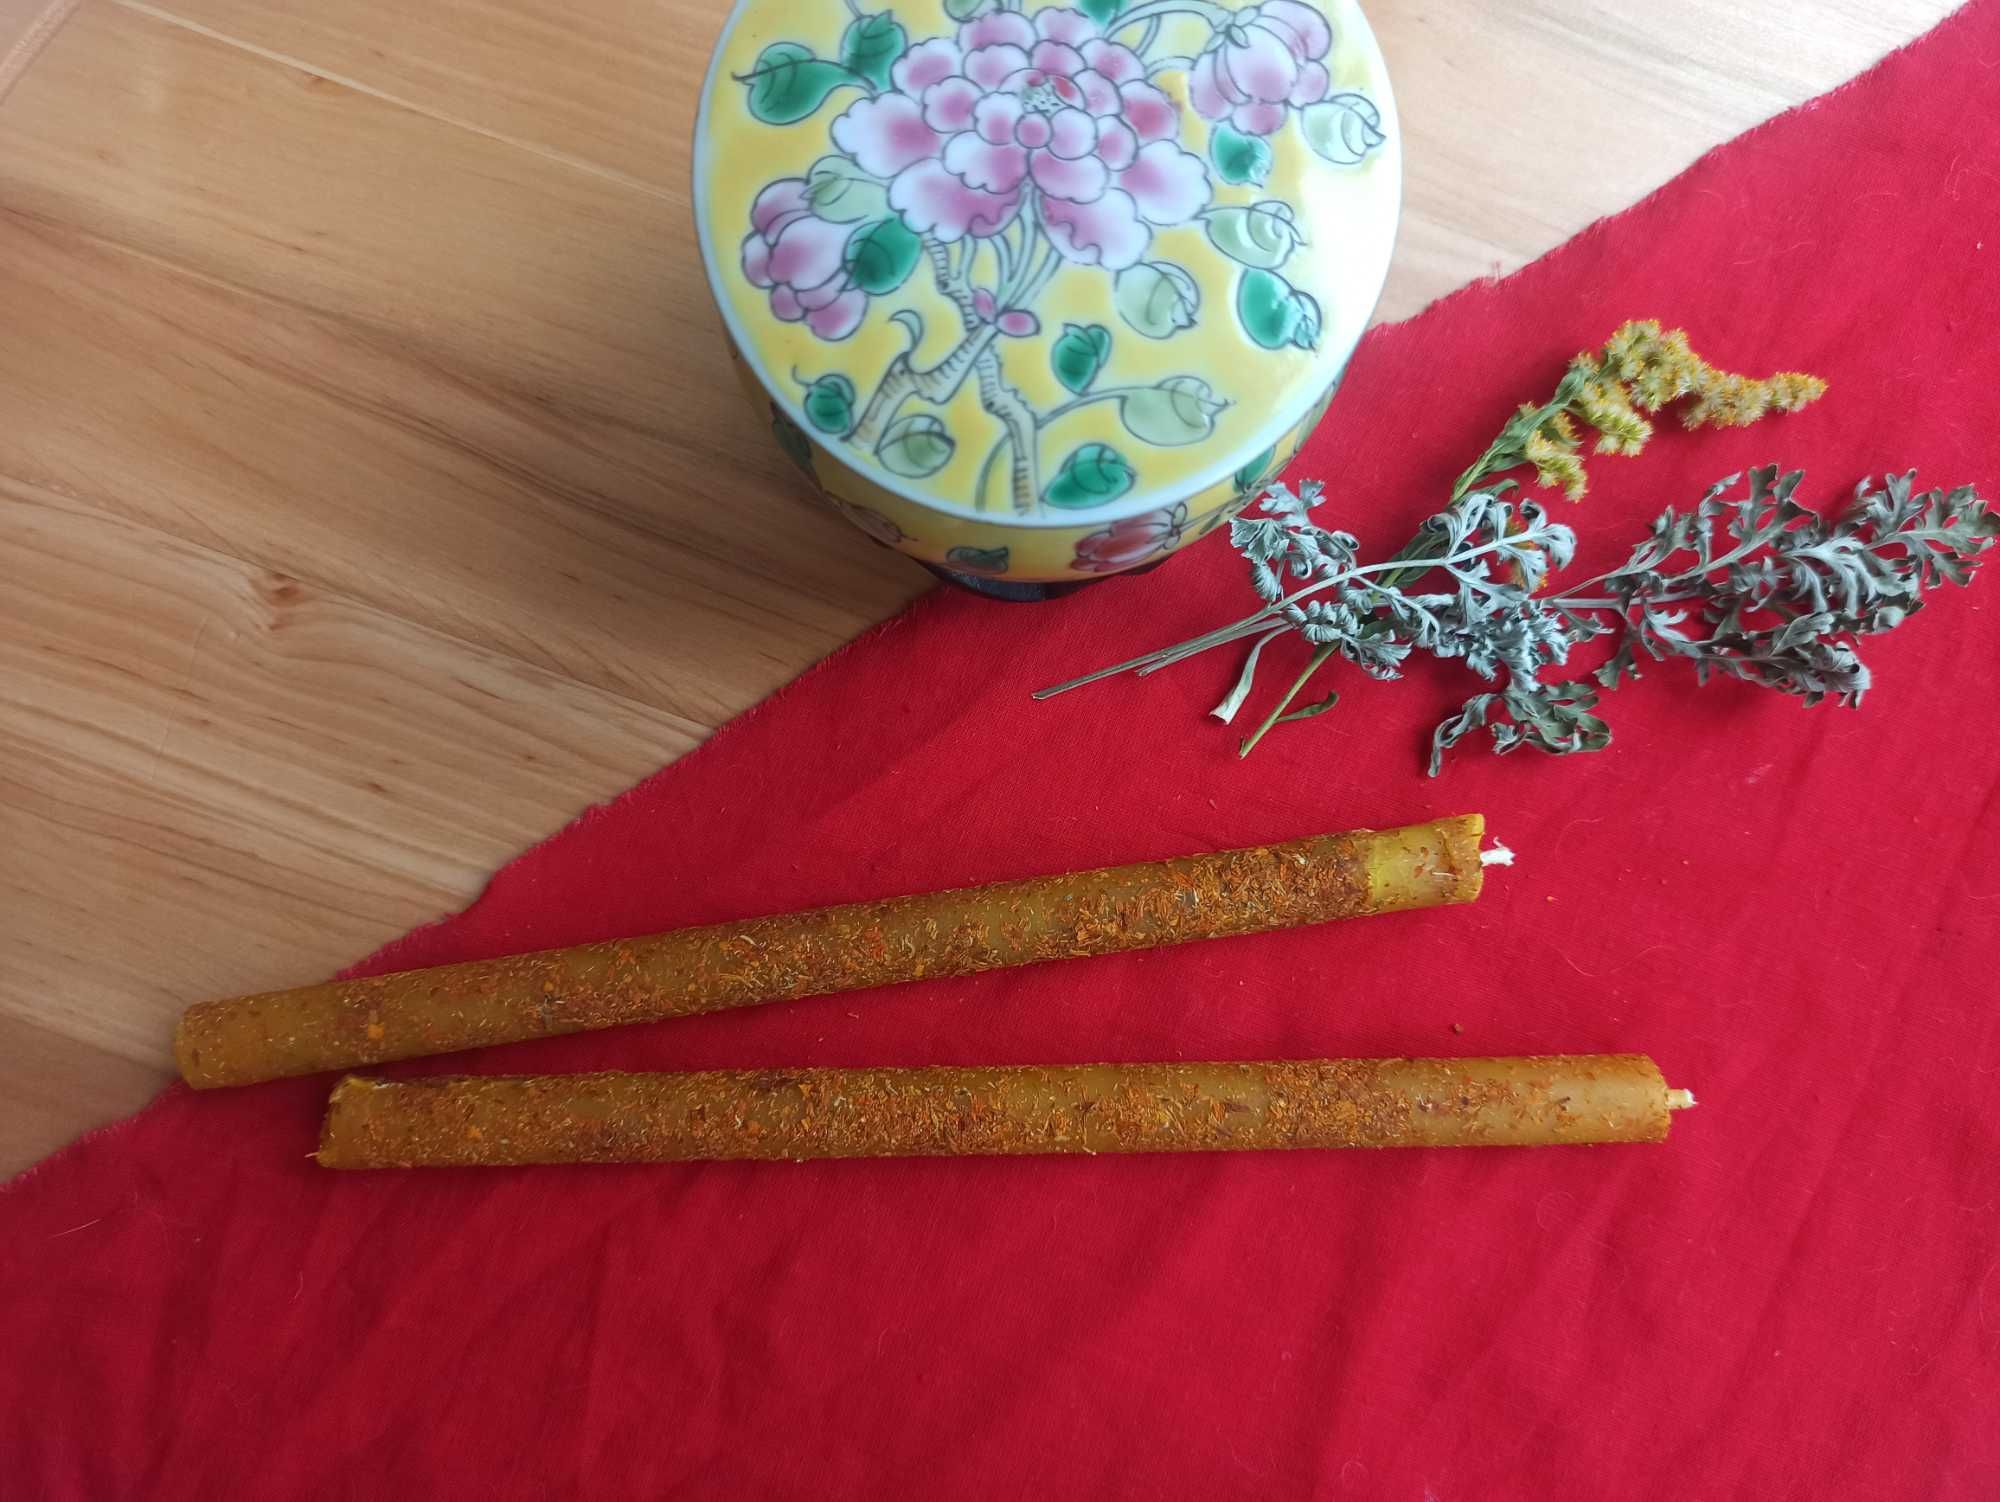 Свеча катаная (лепная) с травами, целевая из натурального воска